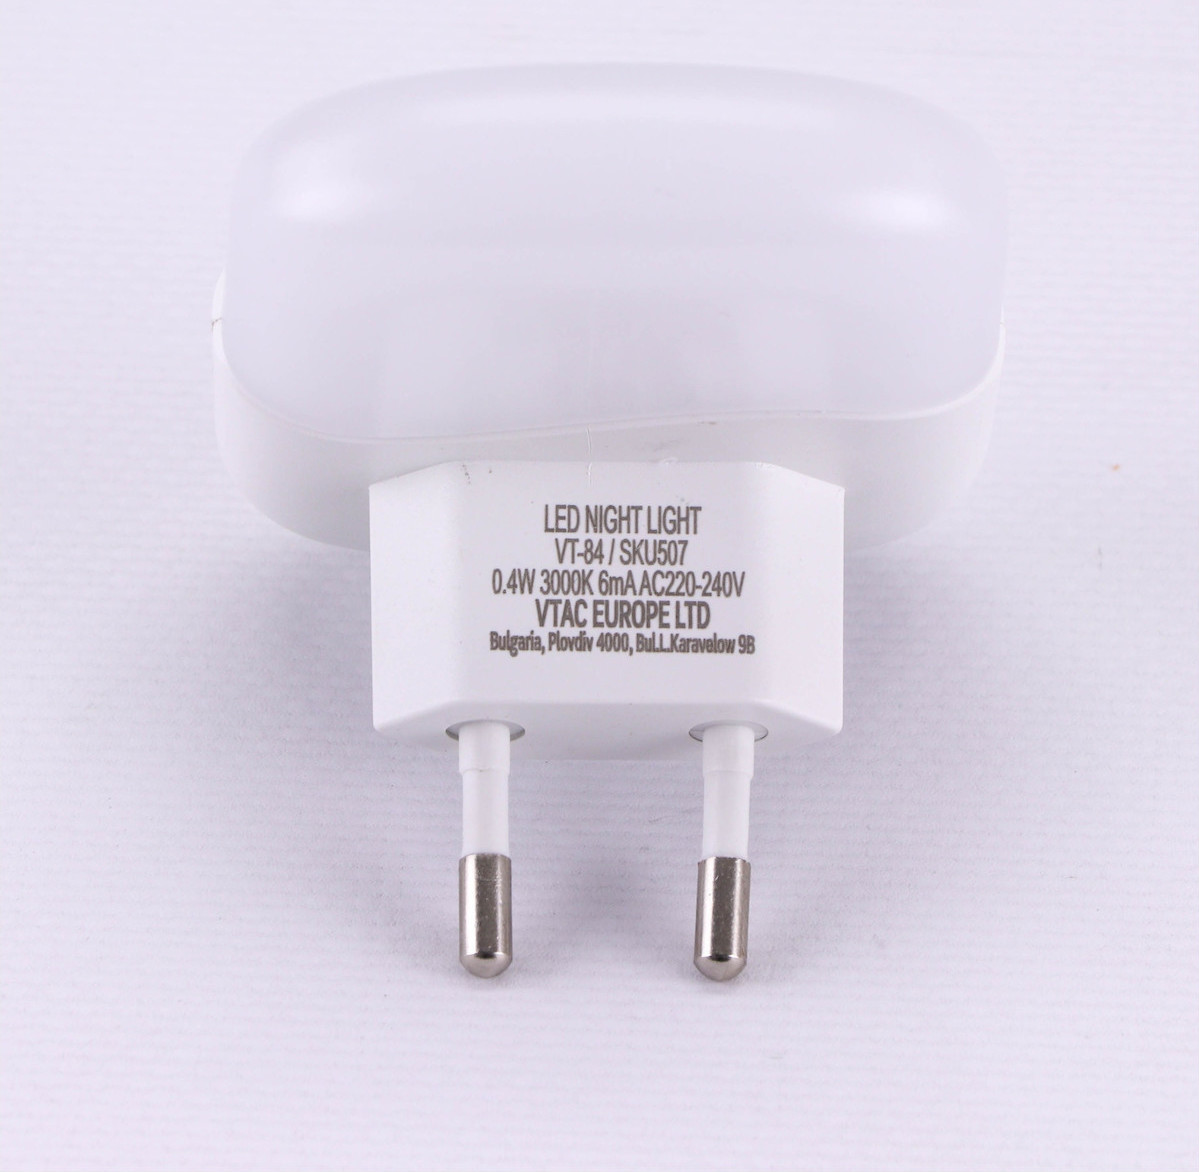 Led Φωτάκι Νυκτός Πρίζας Τετράγωνο Samsung Chip με Αισθητήρα Φωτός & Διπλή Θύρα USB 0.5W Φυσικό Λευκό 4000Κ 508 - V-TAC